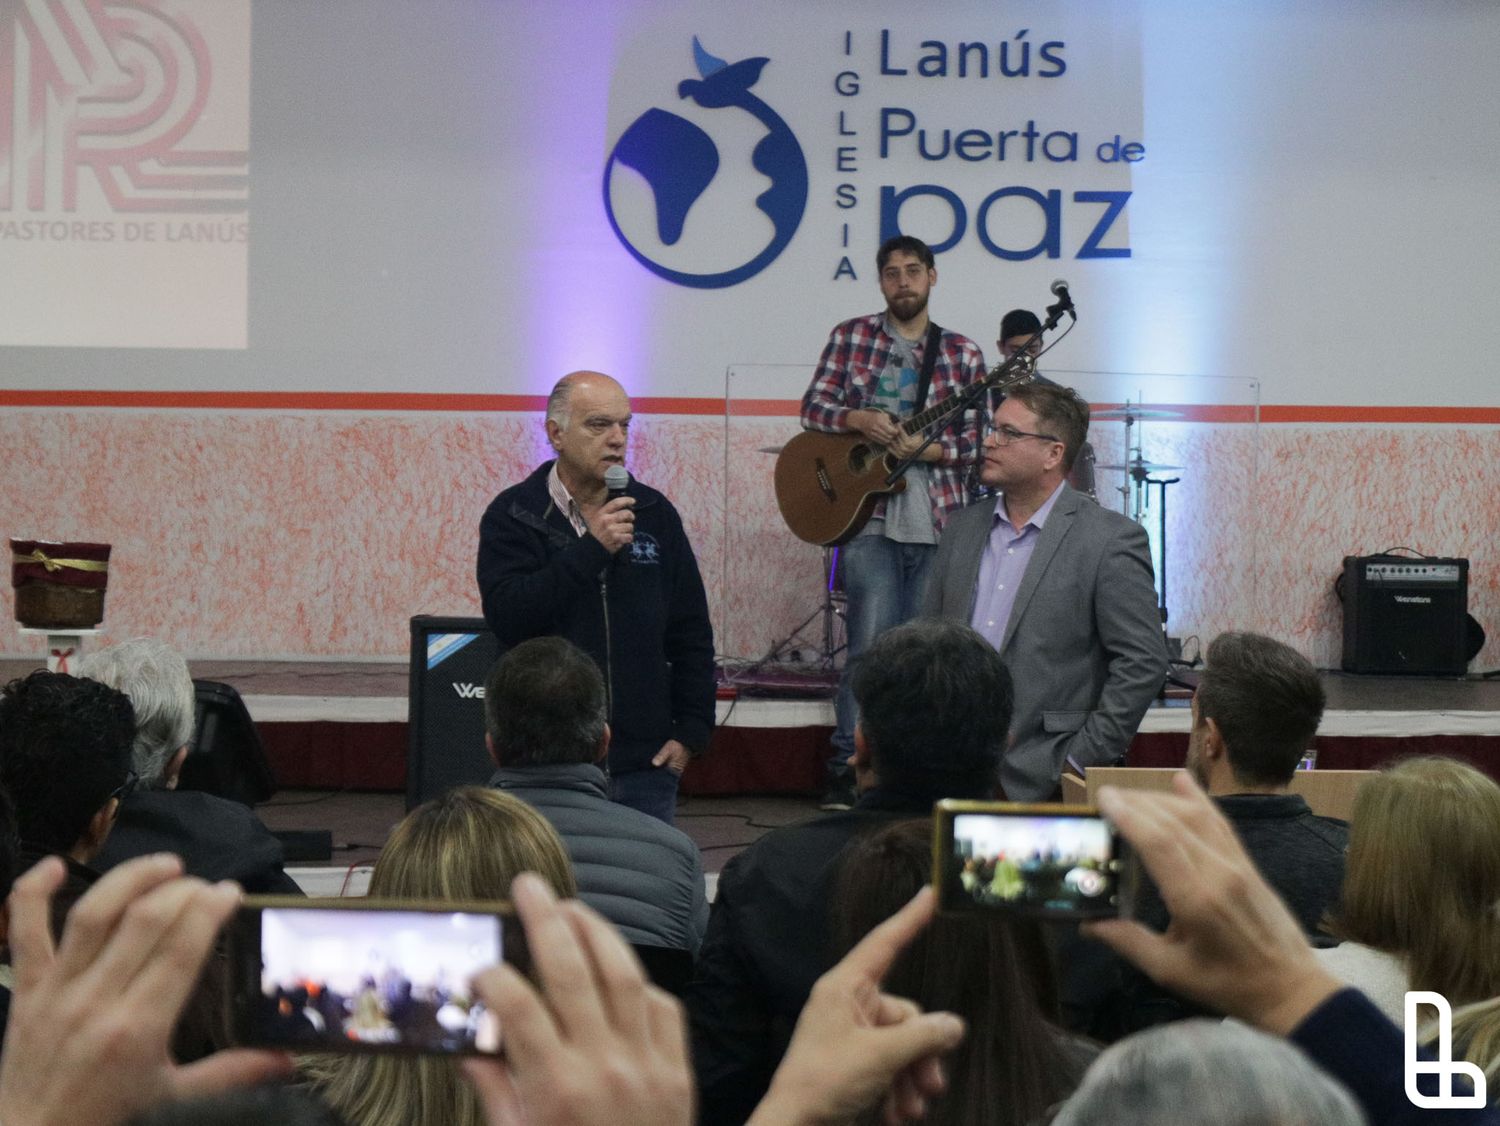 Grindetti con el Consejo Pastoral de Lanús: "La iglesia trabaja en la unión de los argentinos"